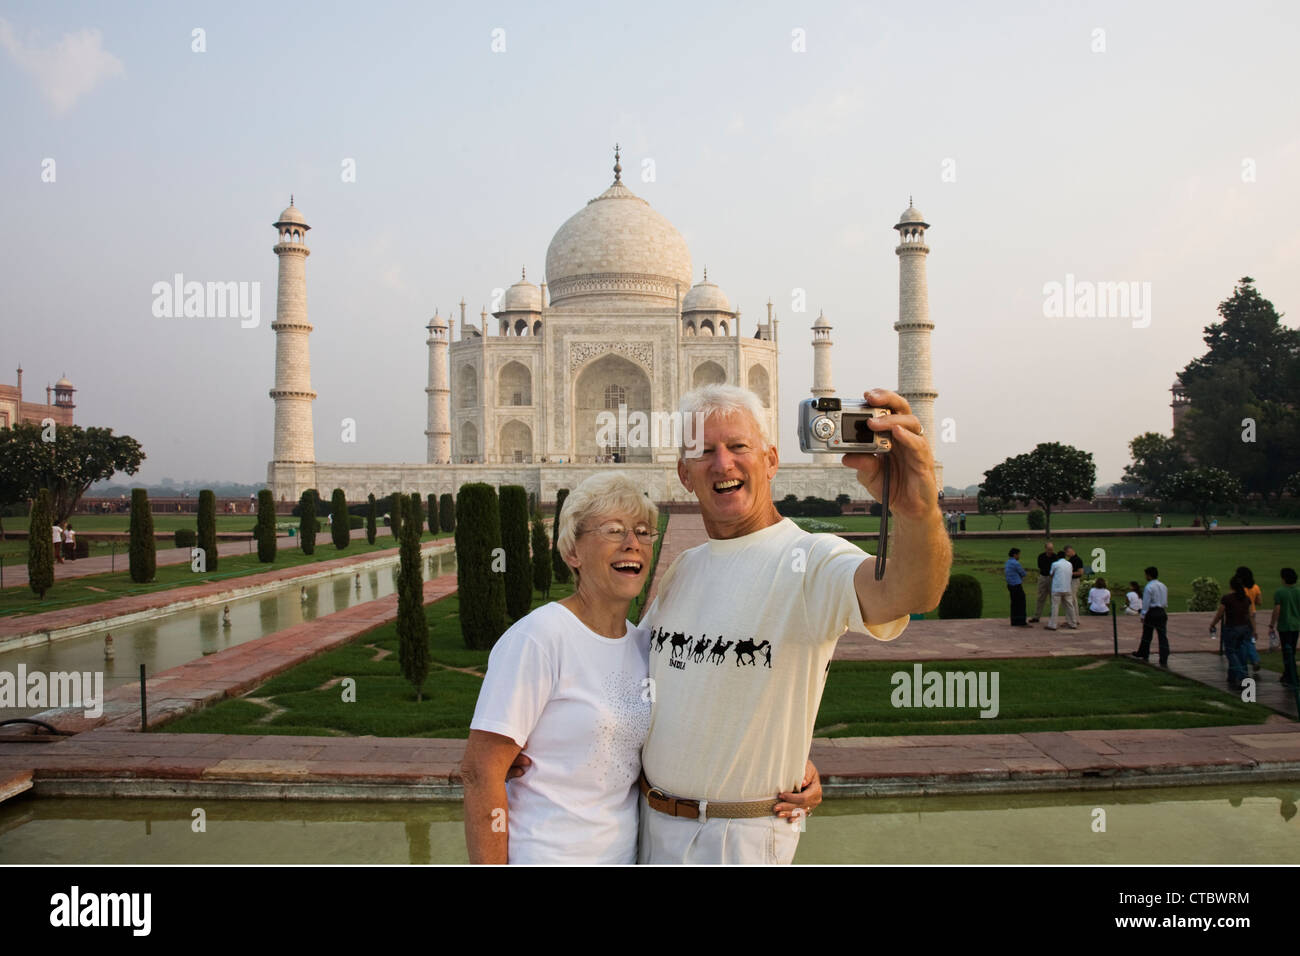 Tourist prendre leur photo sur le célèbre Taj Mahal. Le Taj Mahal est un mausolée situé à Agra, en Inde. Banque D'Images